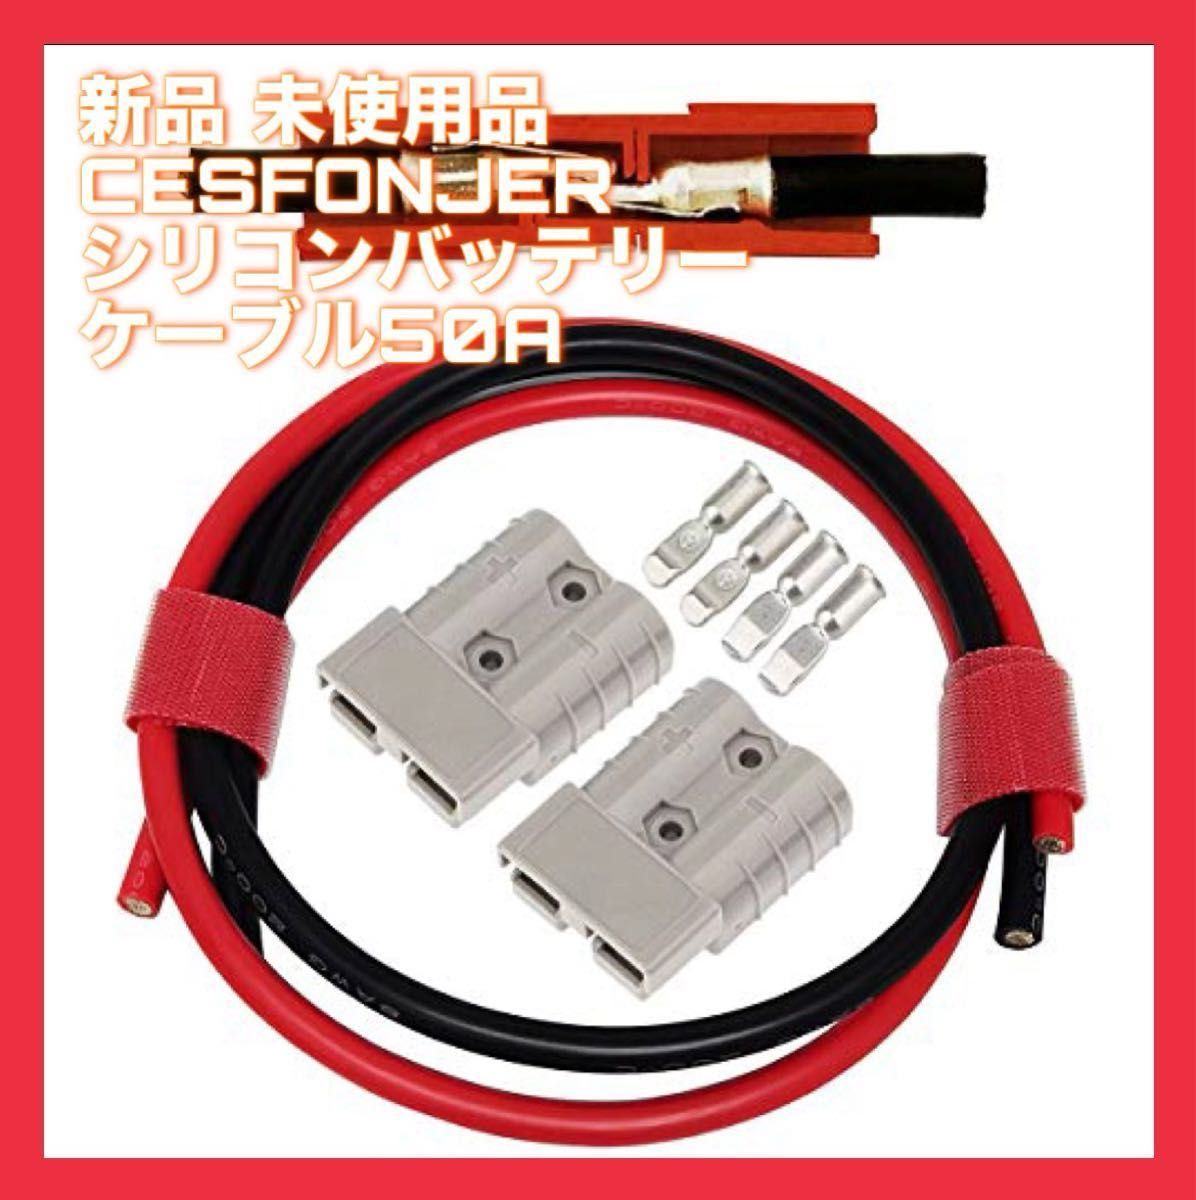 CESFONJER 50A バッテリーコネクタクイックコネクト 電線60cm赤黒